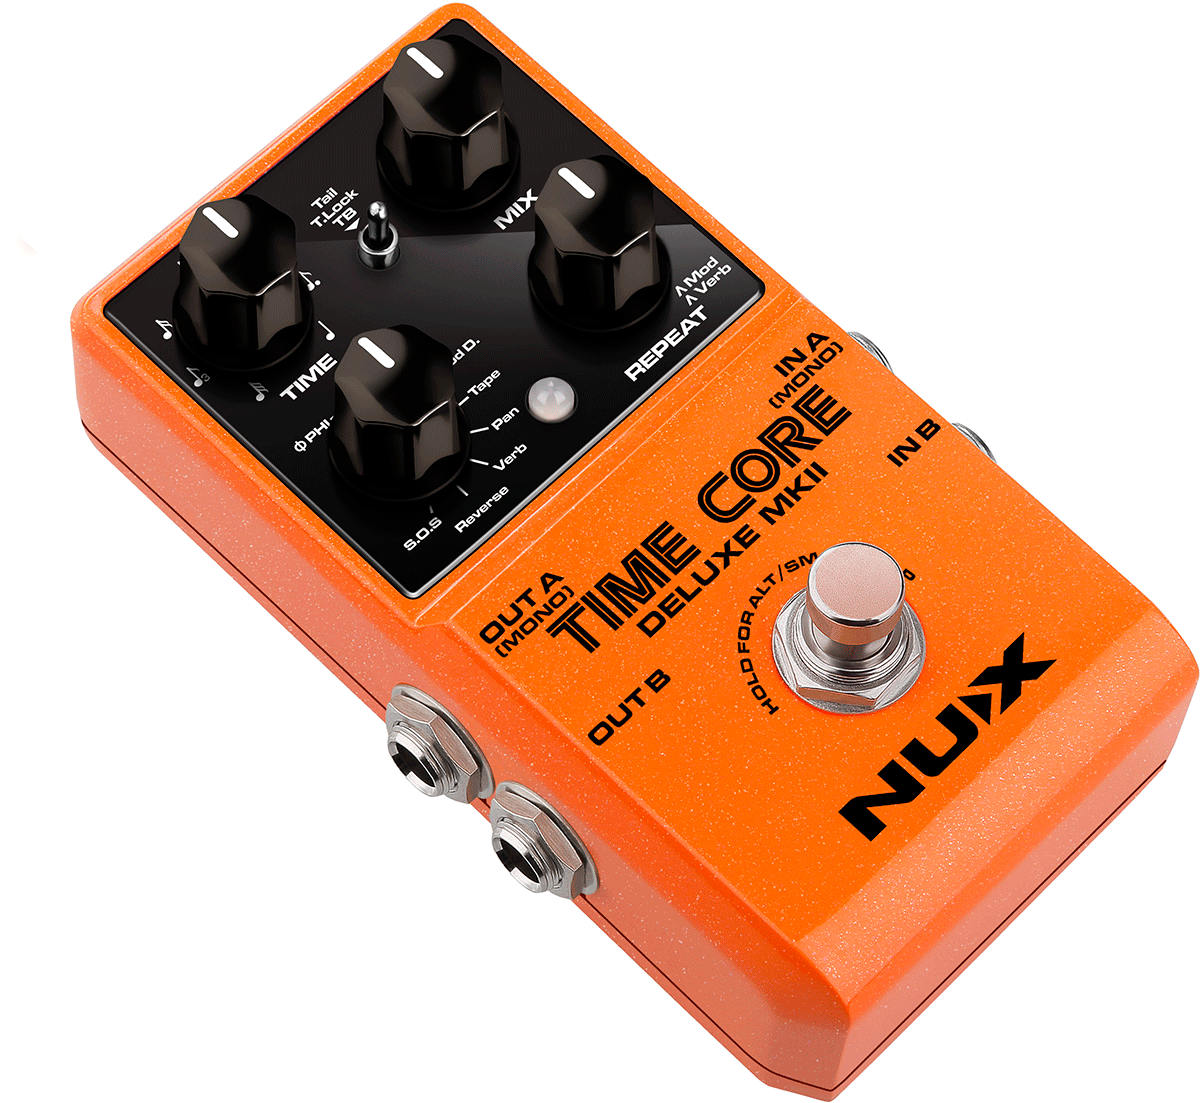 TIMECORE-DLX-MK2 - Delay pedal